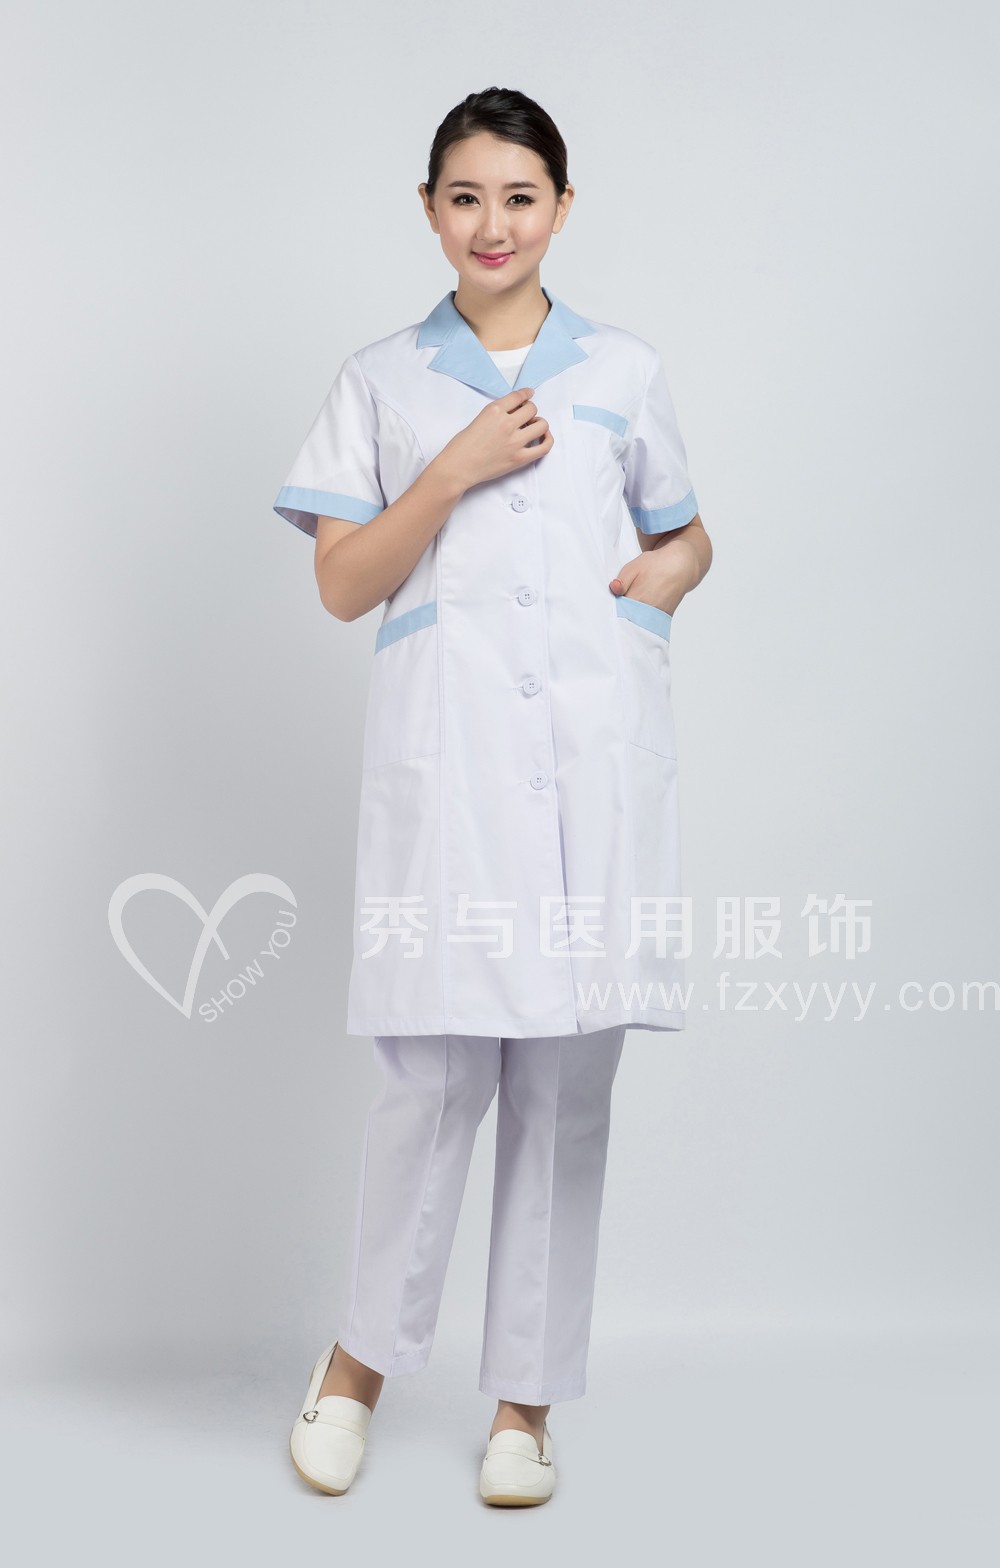 女医生夏装短袖Y1206-2